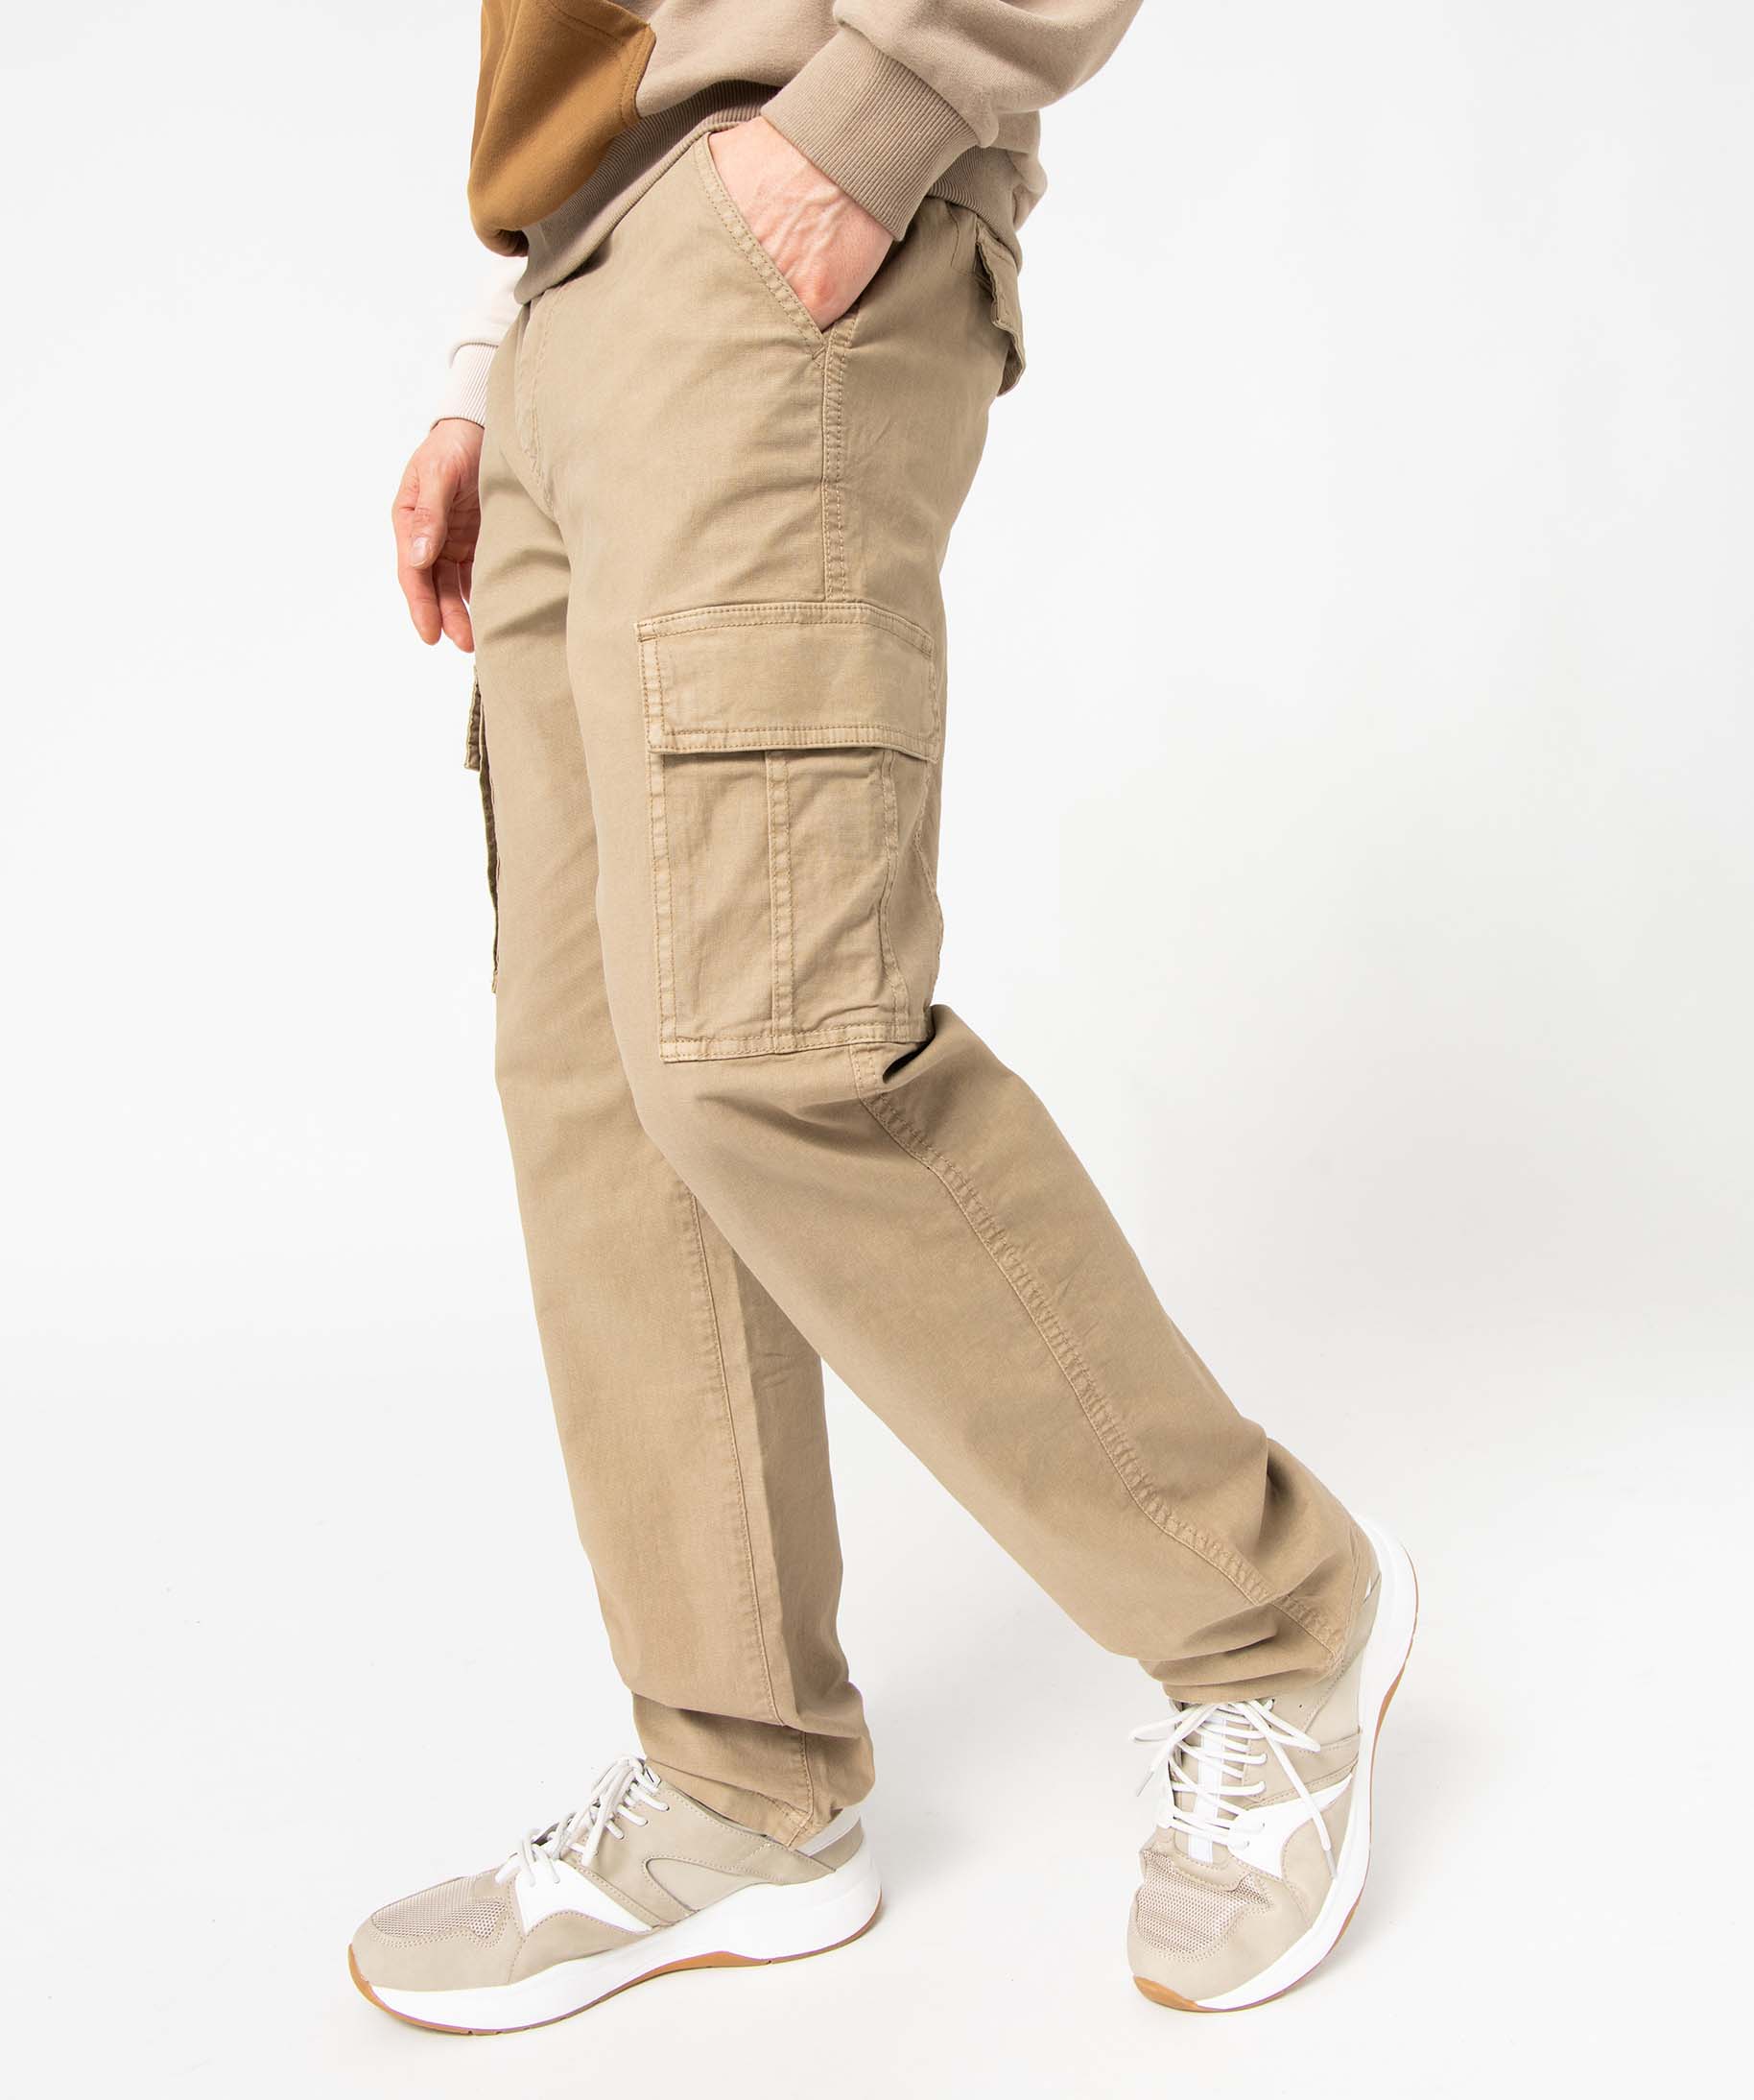 Chaussettes Homme Rayée Coton Stretch BEIGE – Mariner underwear